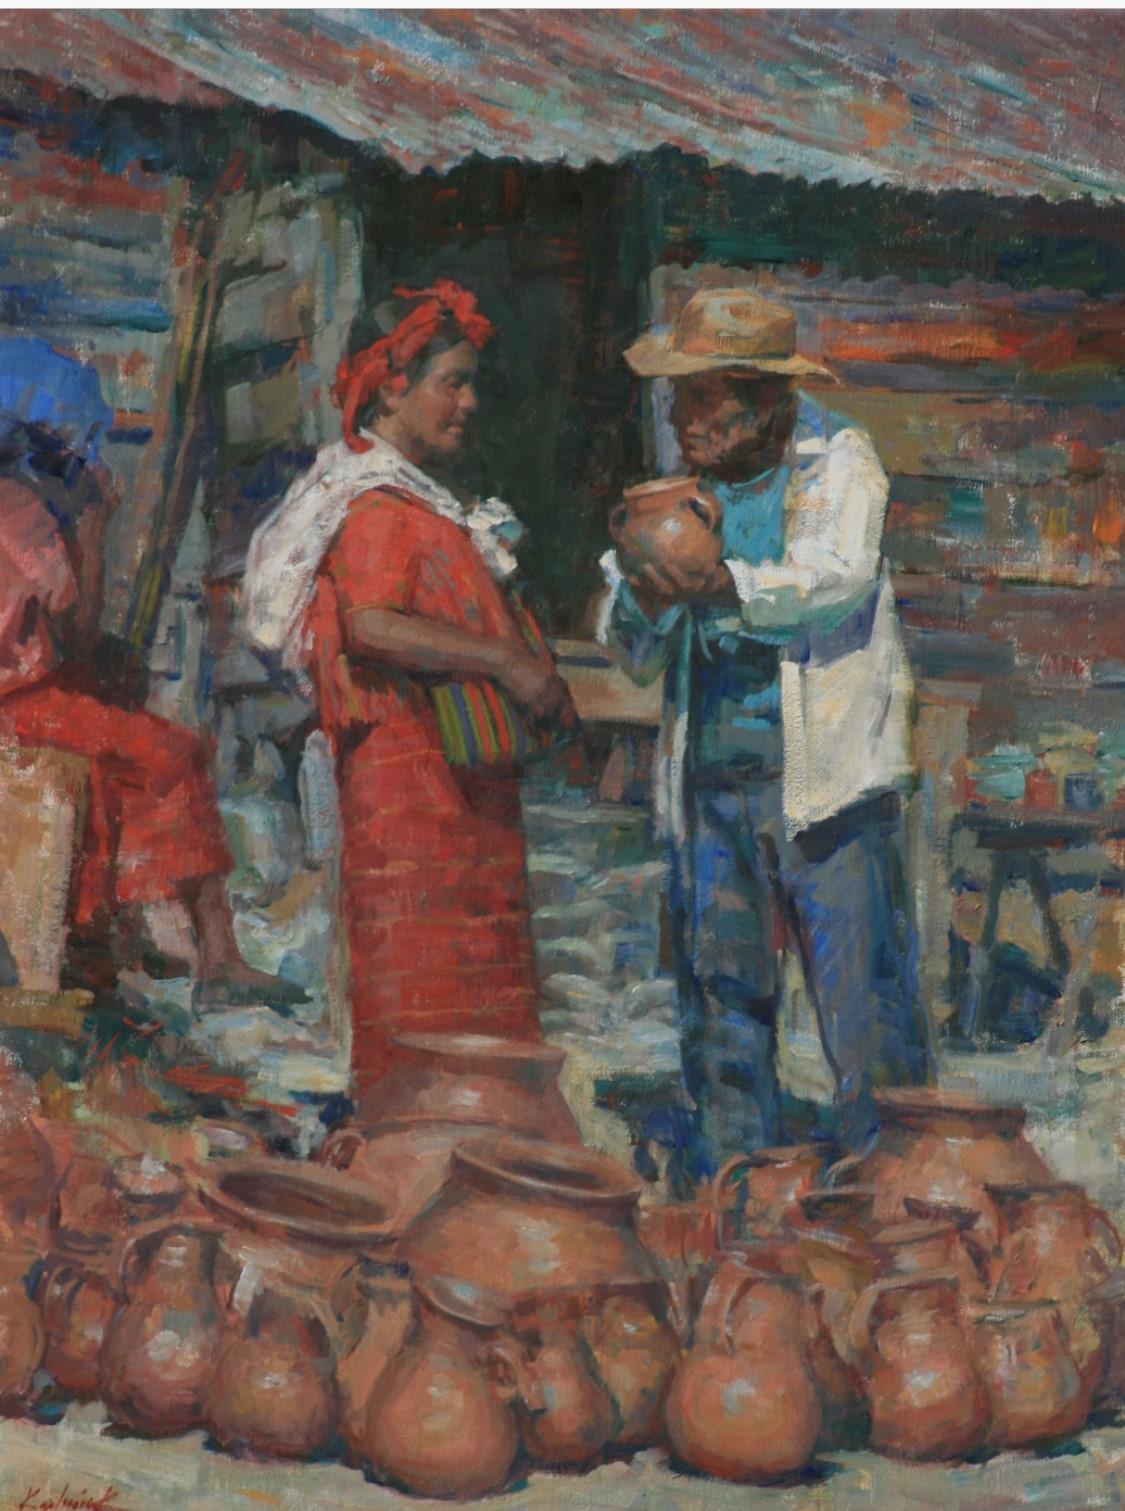 Guatemaltekischer Keramikmarkt  Frauen in Huipils  Handgefertigt von Kunsthandwerkern   Kultur – Painting von William Kalwick